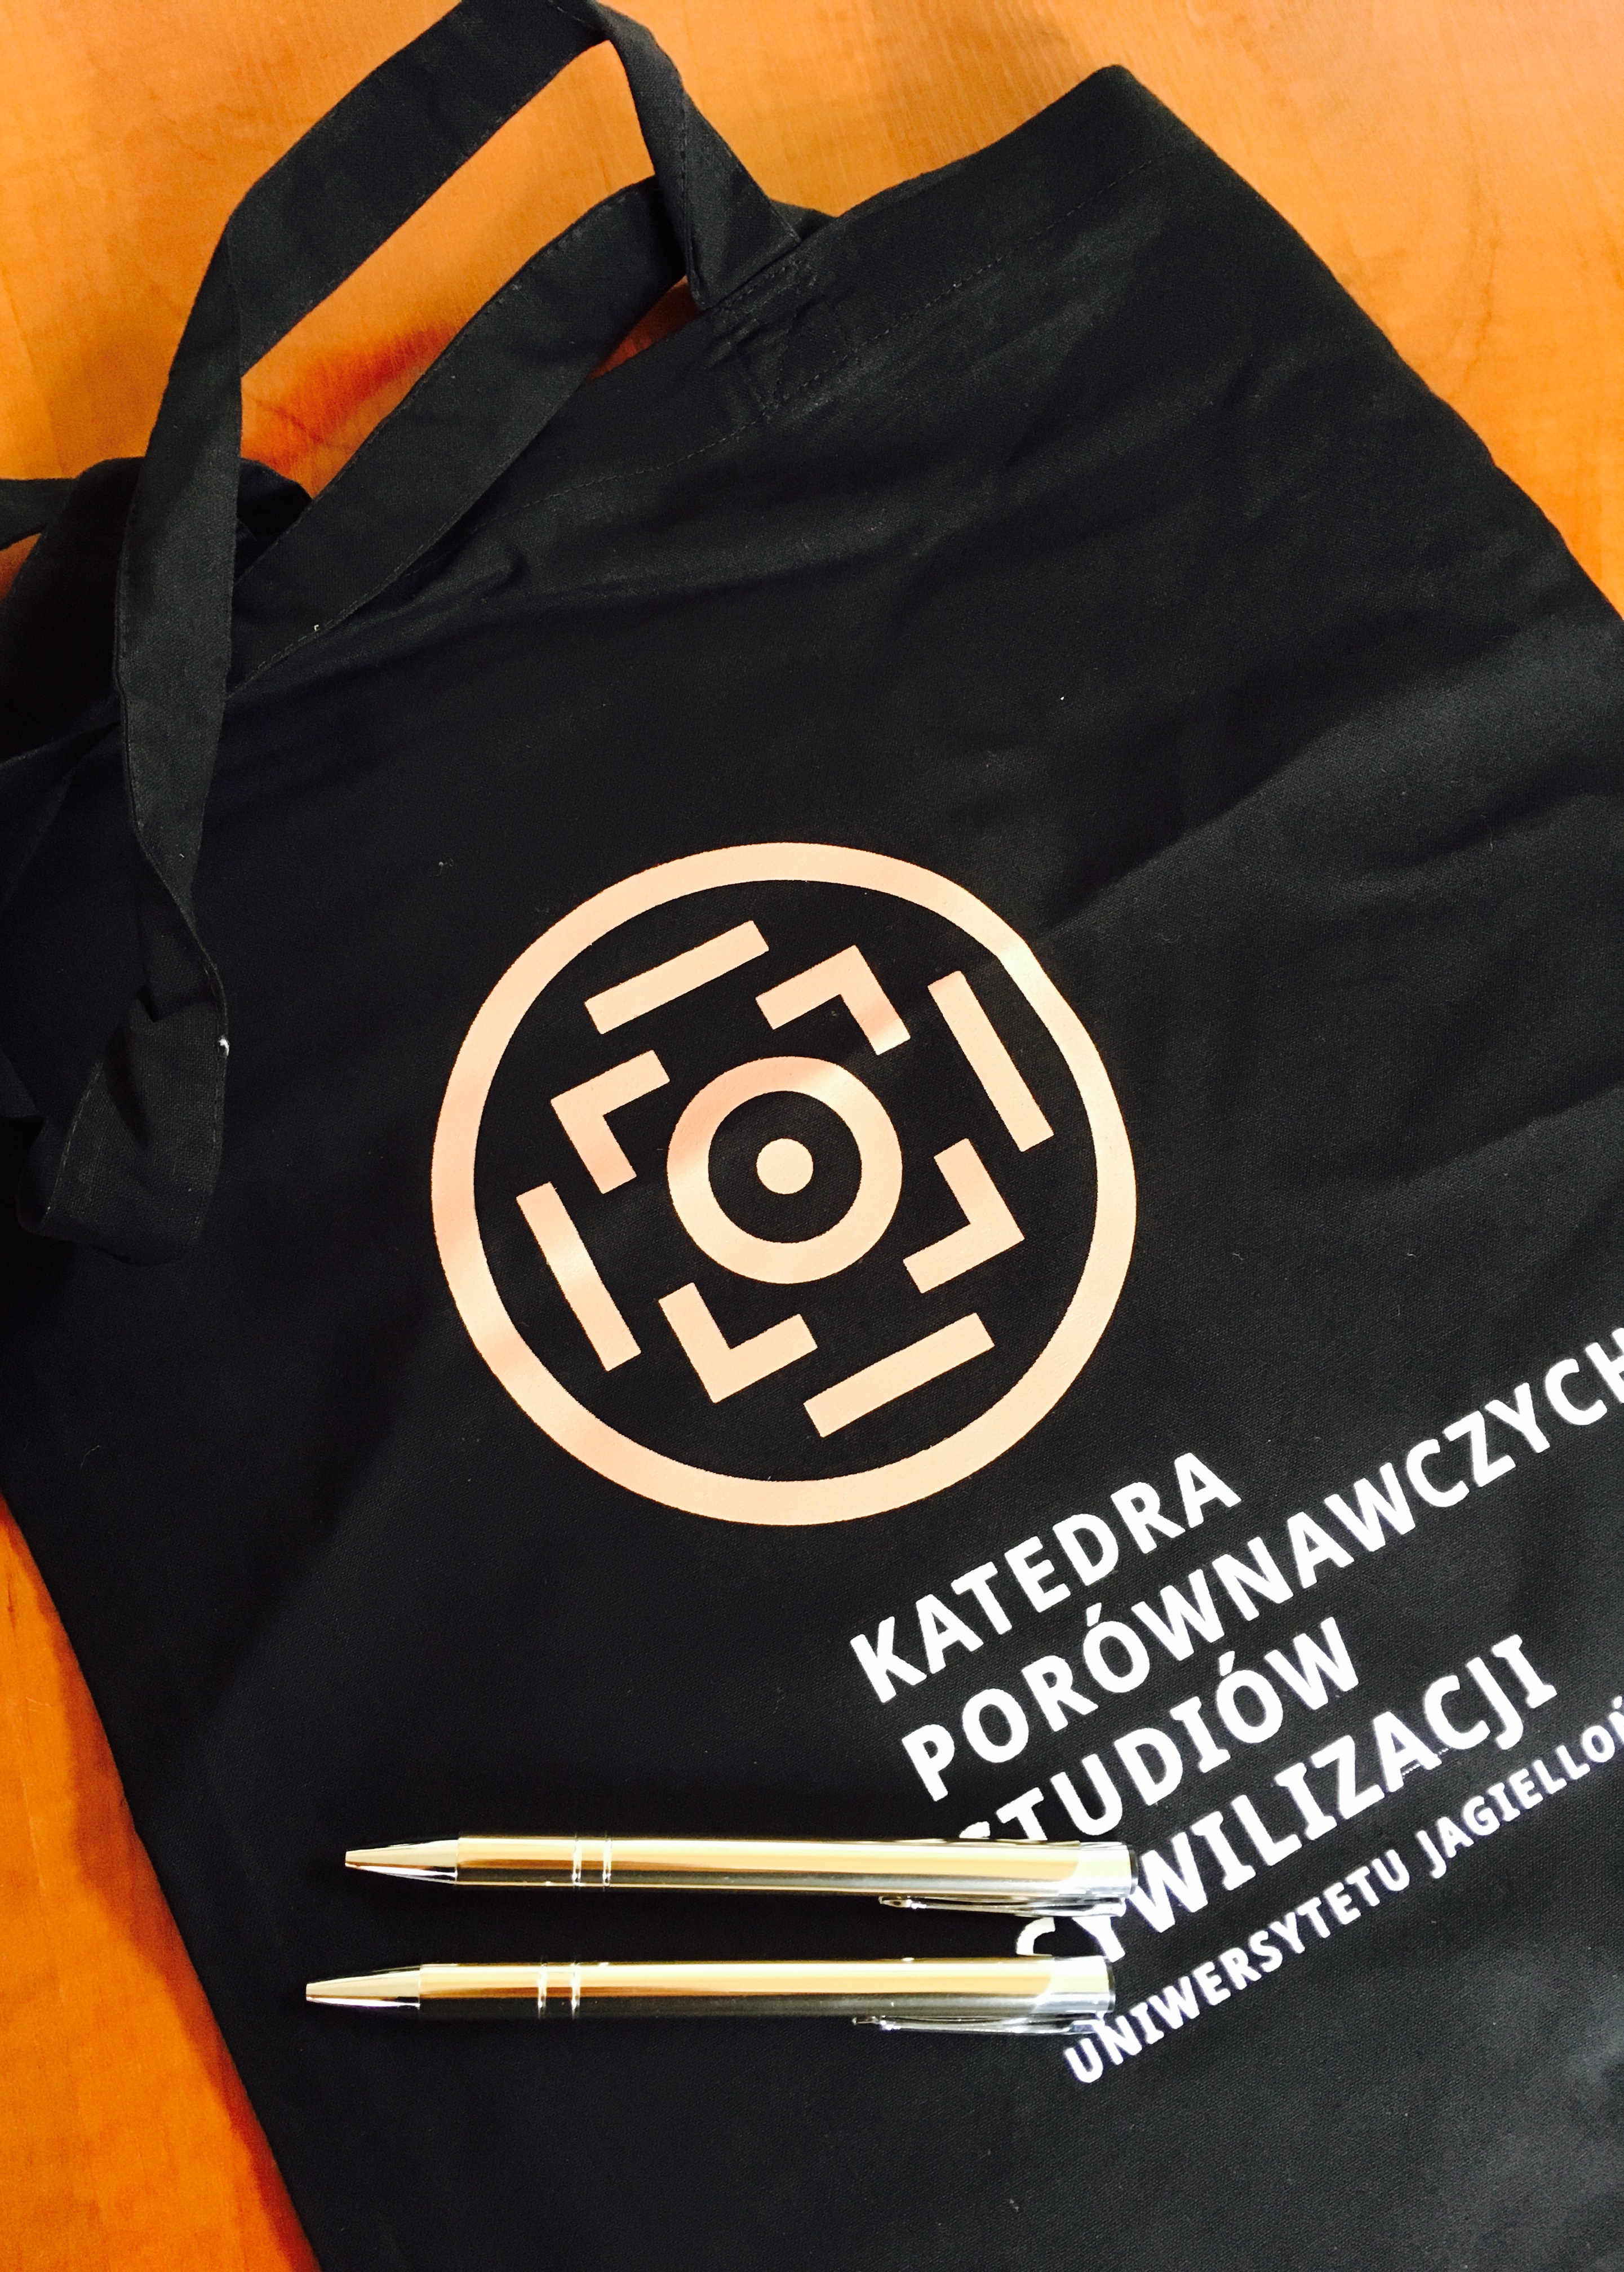 Zdjęcie przedstawia czarną torbę z logo KPSC i dwa złote długopisy z logo KPSC leżące na niej.